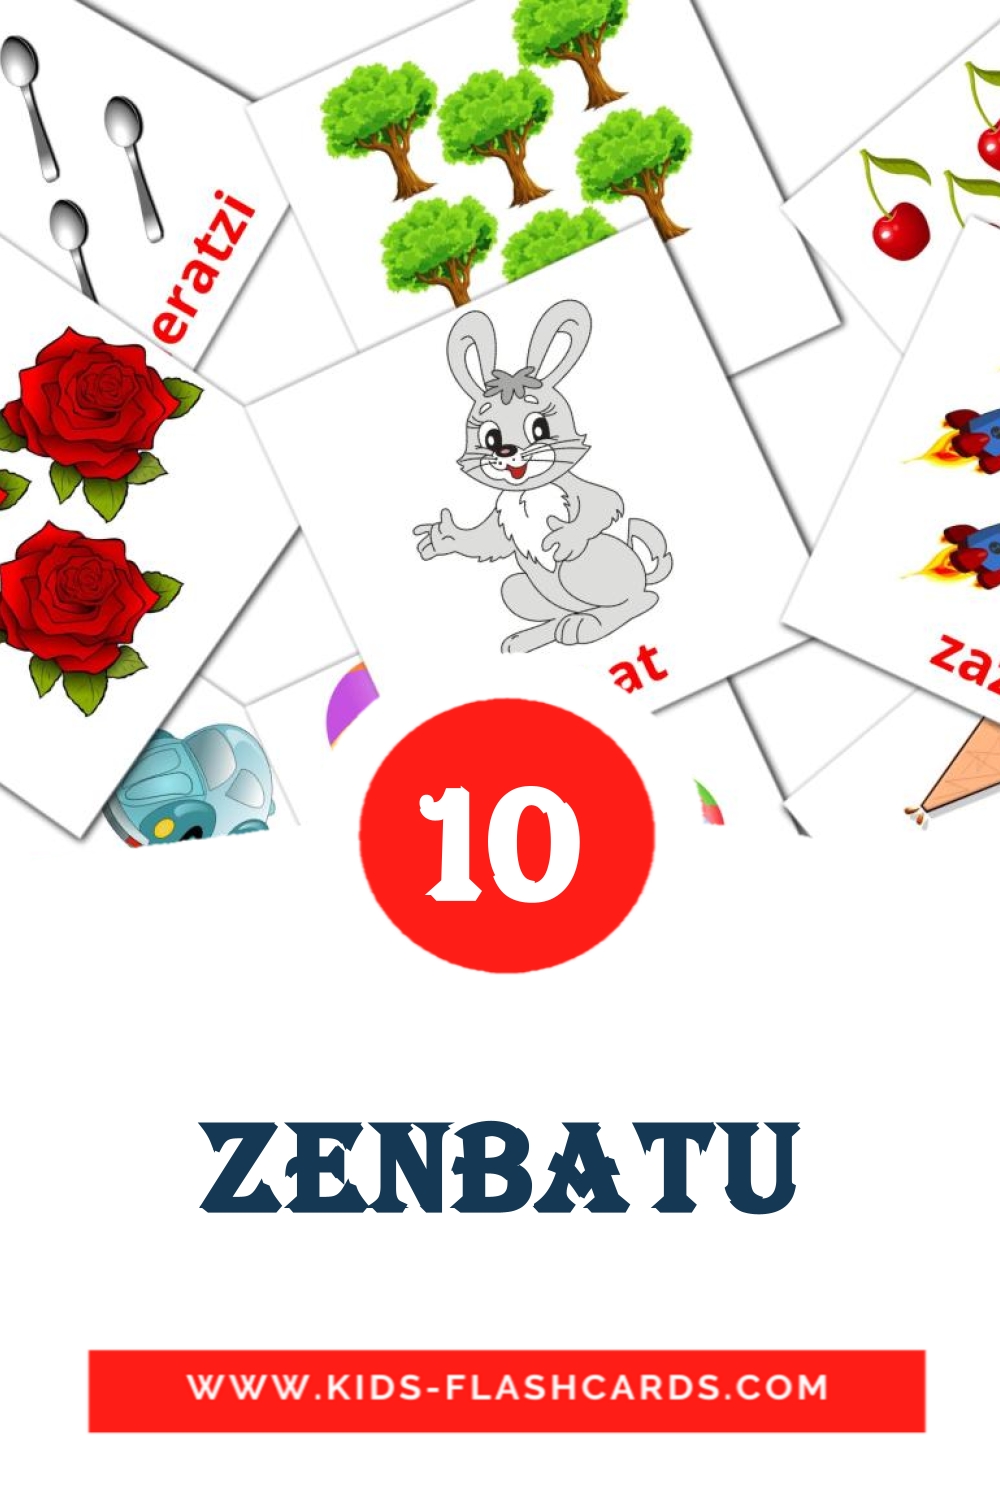 10 Zenbatu fotokaarten voor kleuters in het baskisch